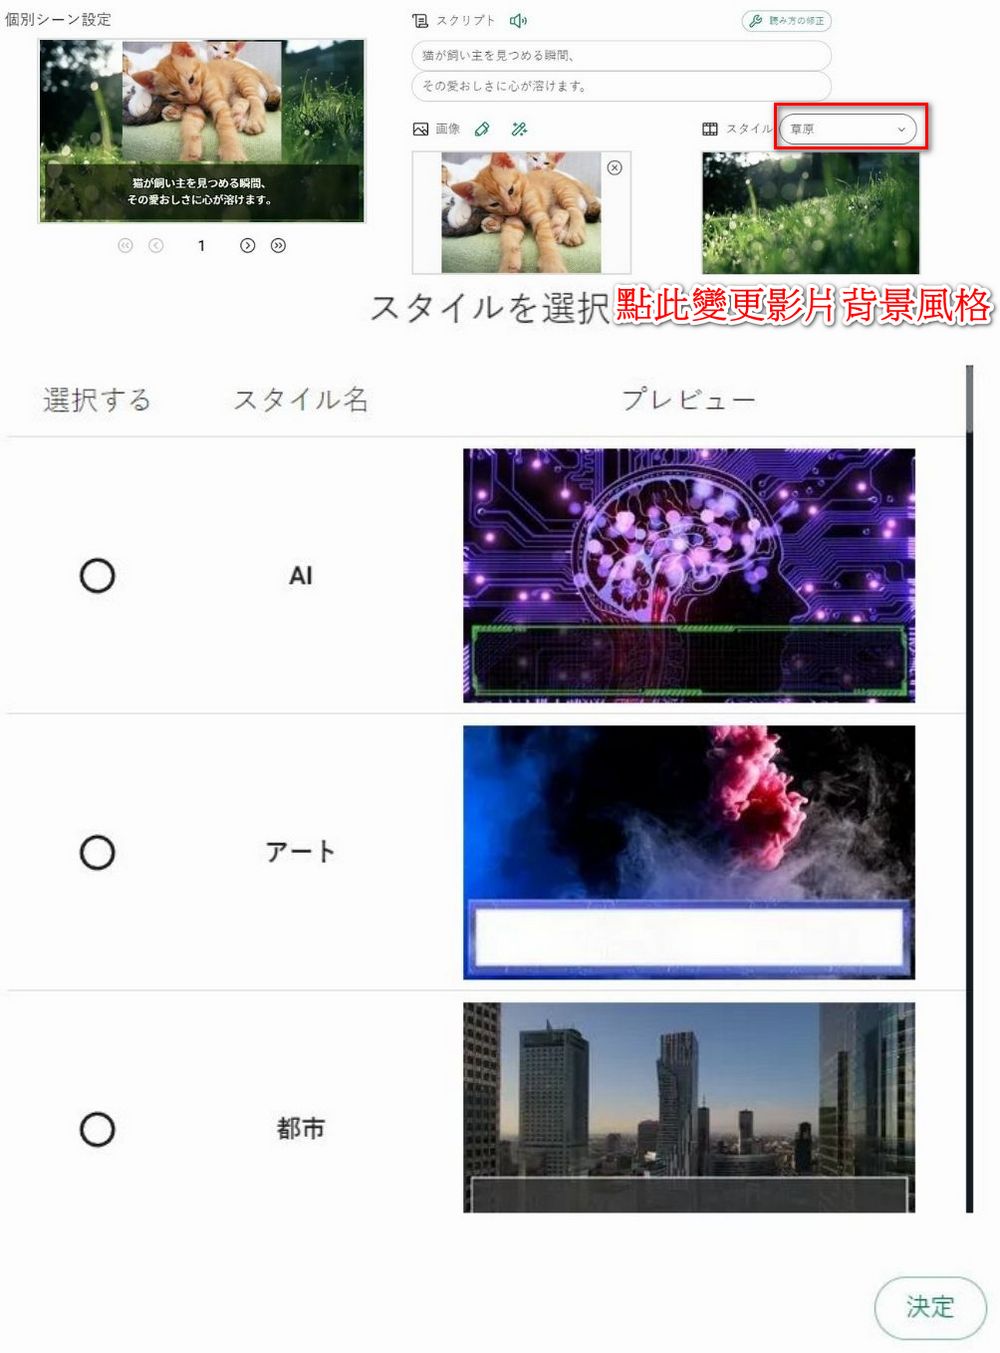 日本 AI 影片生成工具「NoLang 2.0」，一分鐘搞定影片製作 - 電腦王阿達